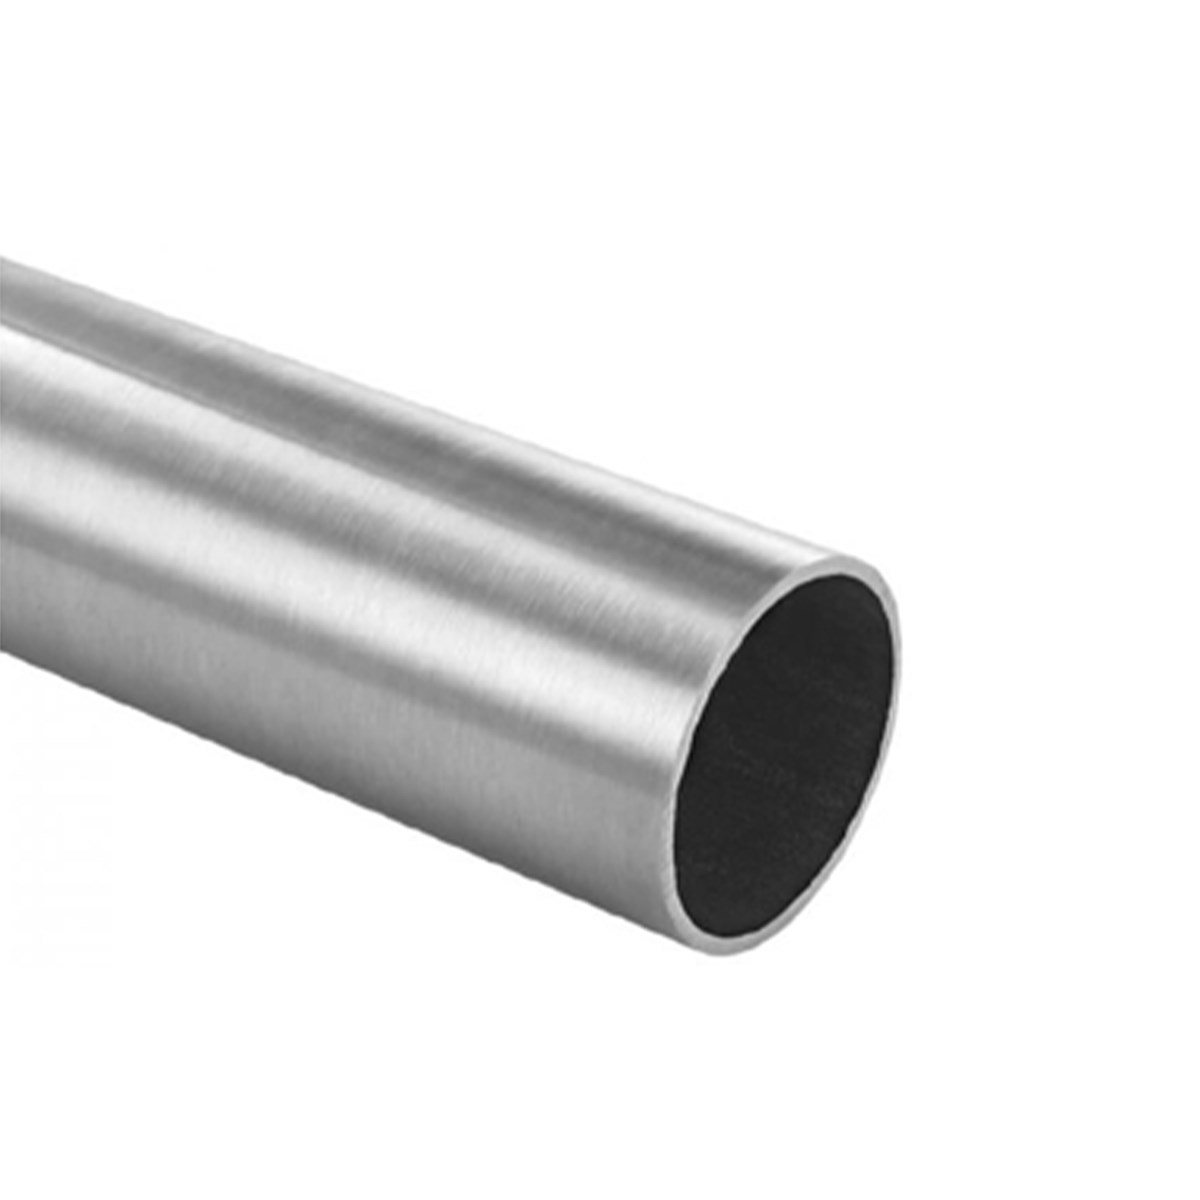 Blind handrail tube 1000mm